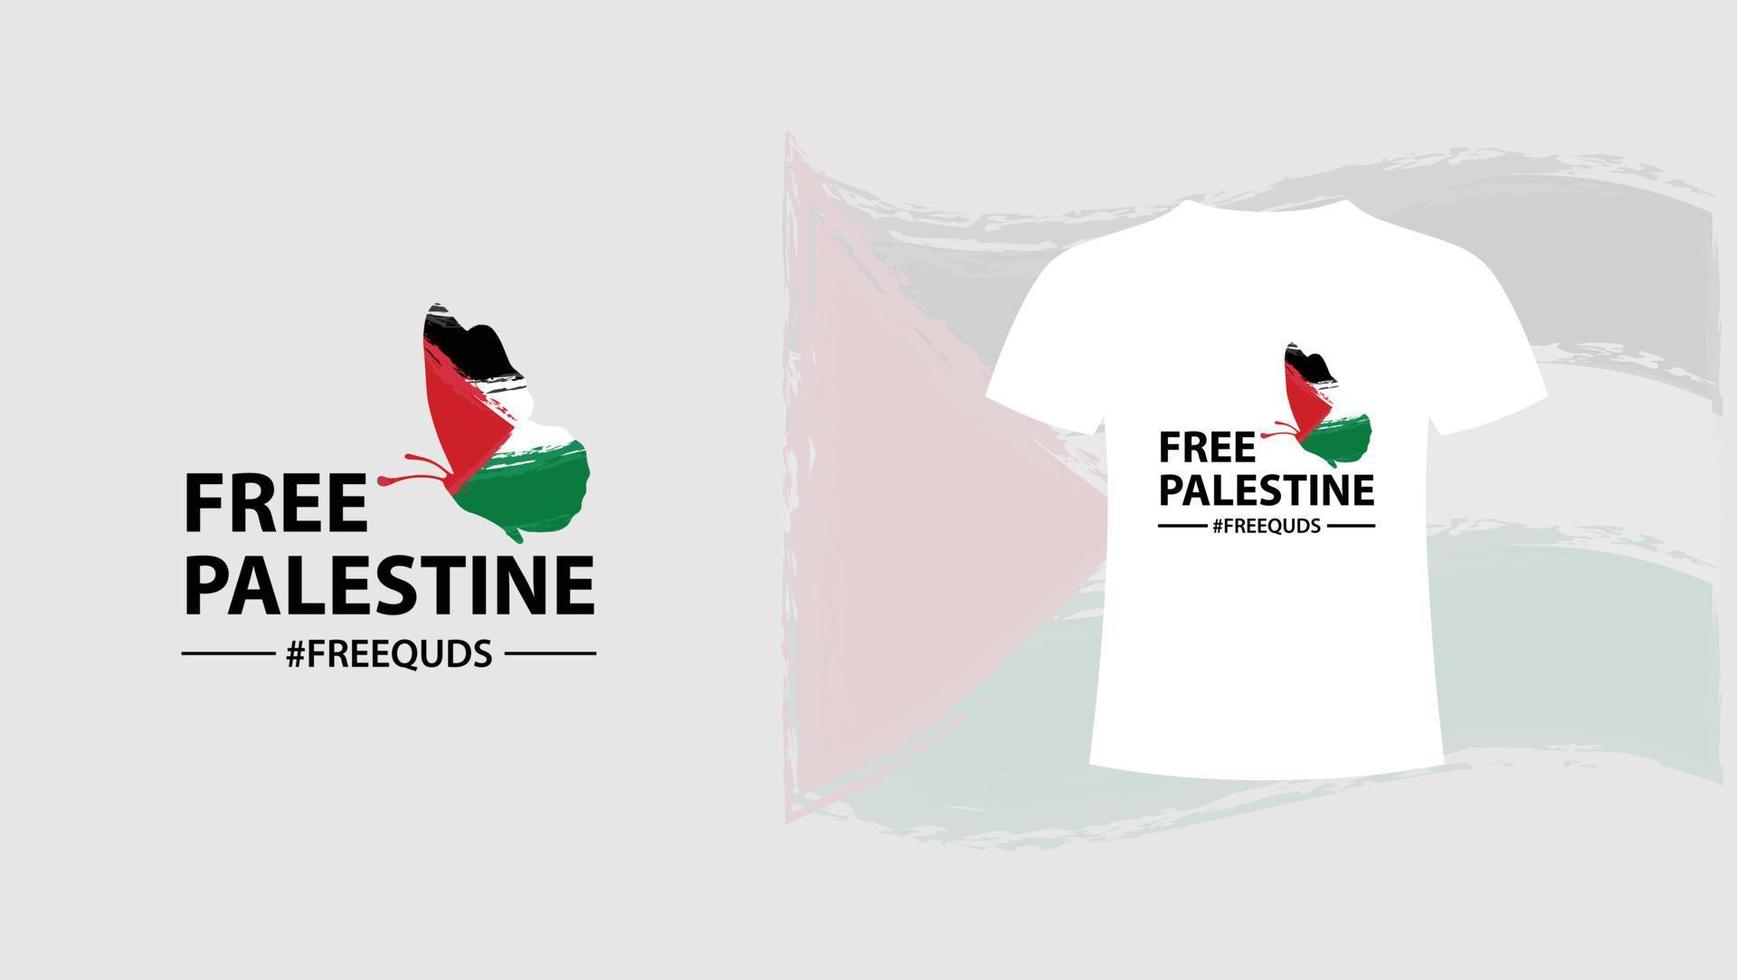 vrij Palestina de vlinder vlag vector illustratie achtergrond. bidden voor Palestina, gaz, moslim, vrij quds vlag behang, folder, banier, t-shirt, post vector illustratie